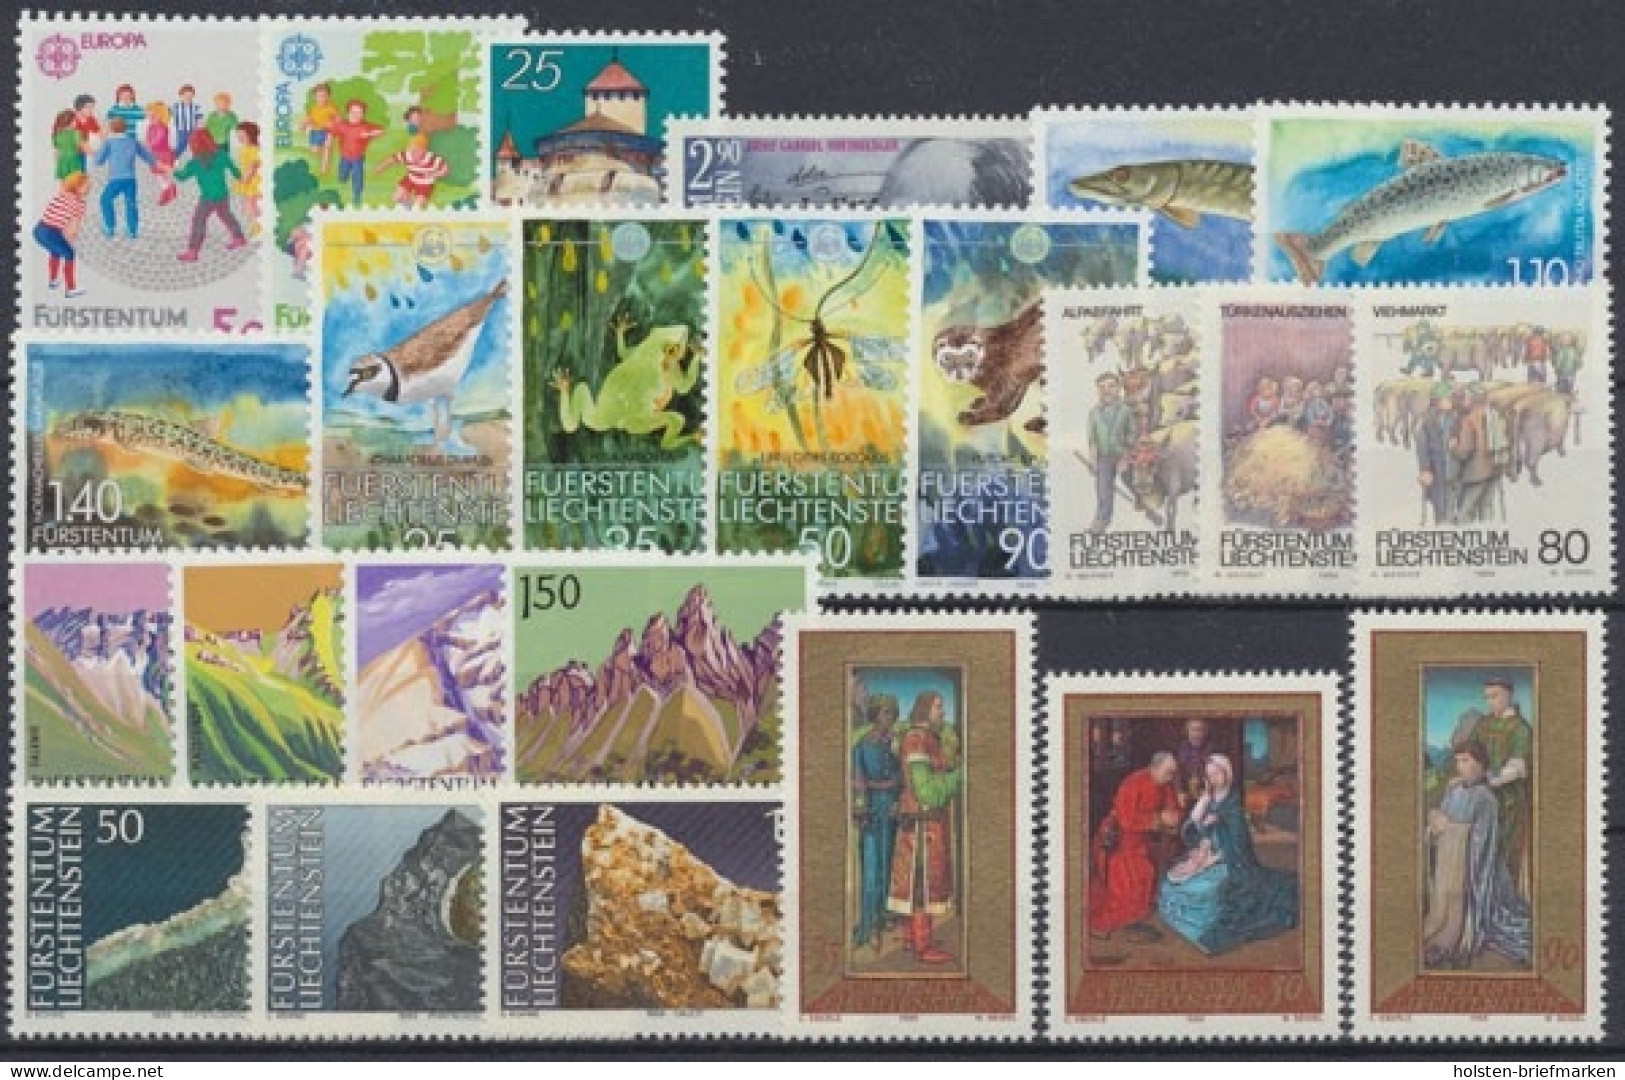 Liechtenstein, MiNr. 960-983, Jahrgang 1989, Postfrisch - Annate Complete